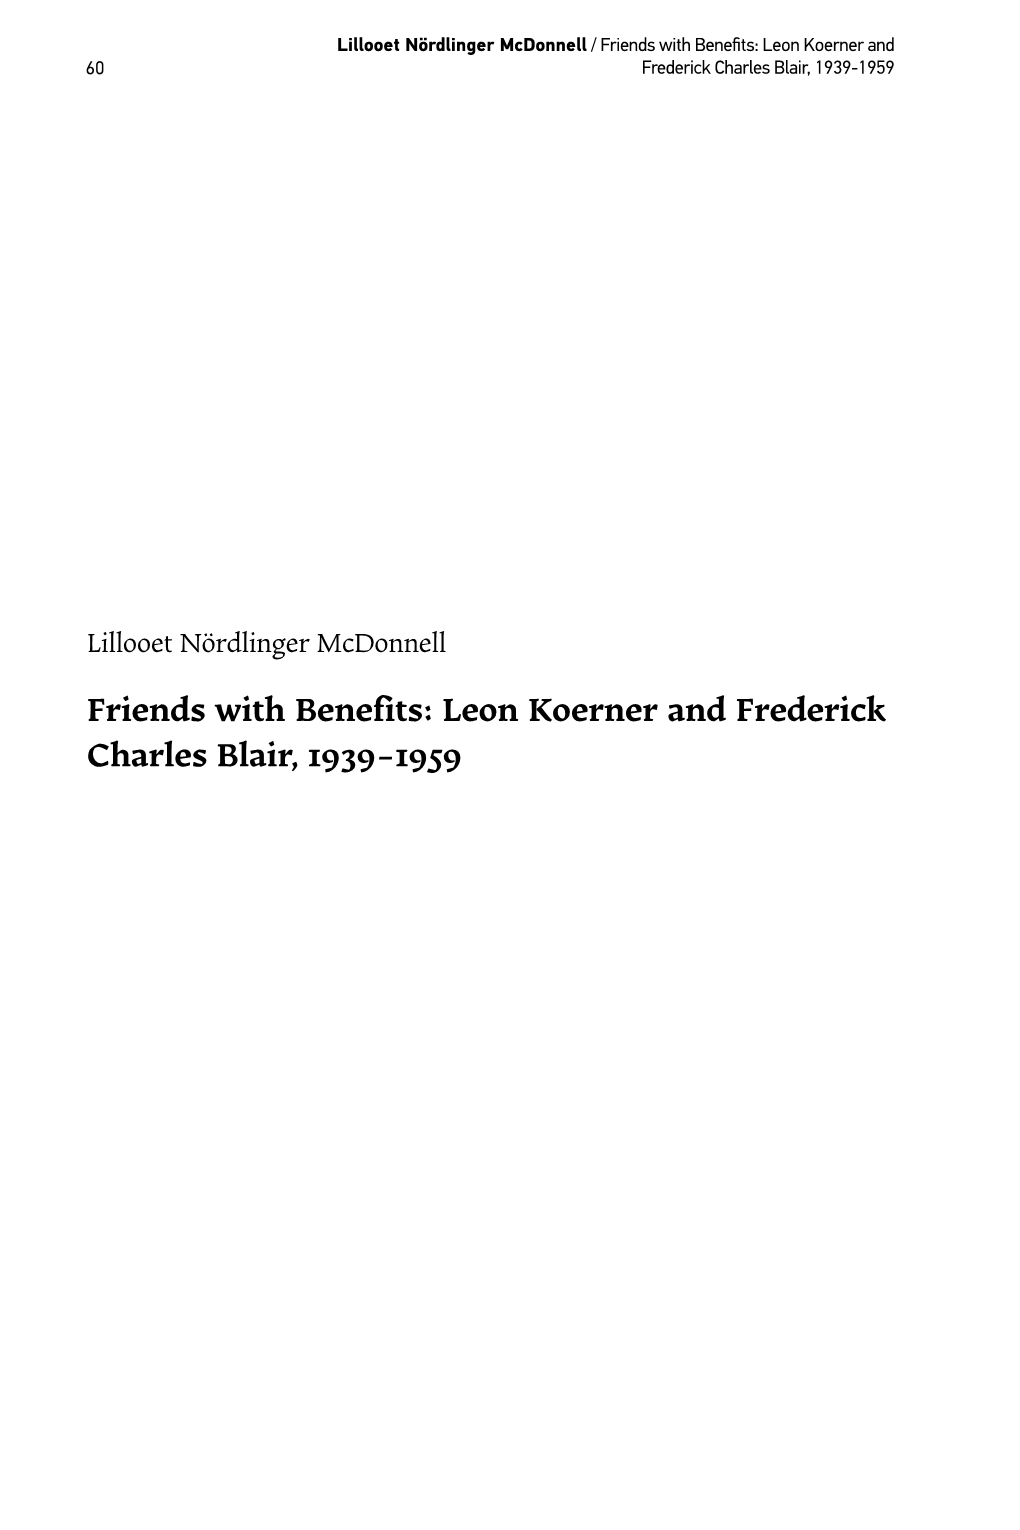 Leon Koerner and Frederick Charles Blair, 1939-1959 Canadian Jewish Studies / Études Juives Canadiennes, Vol